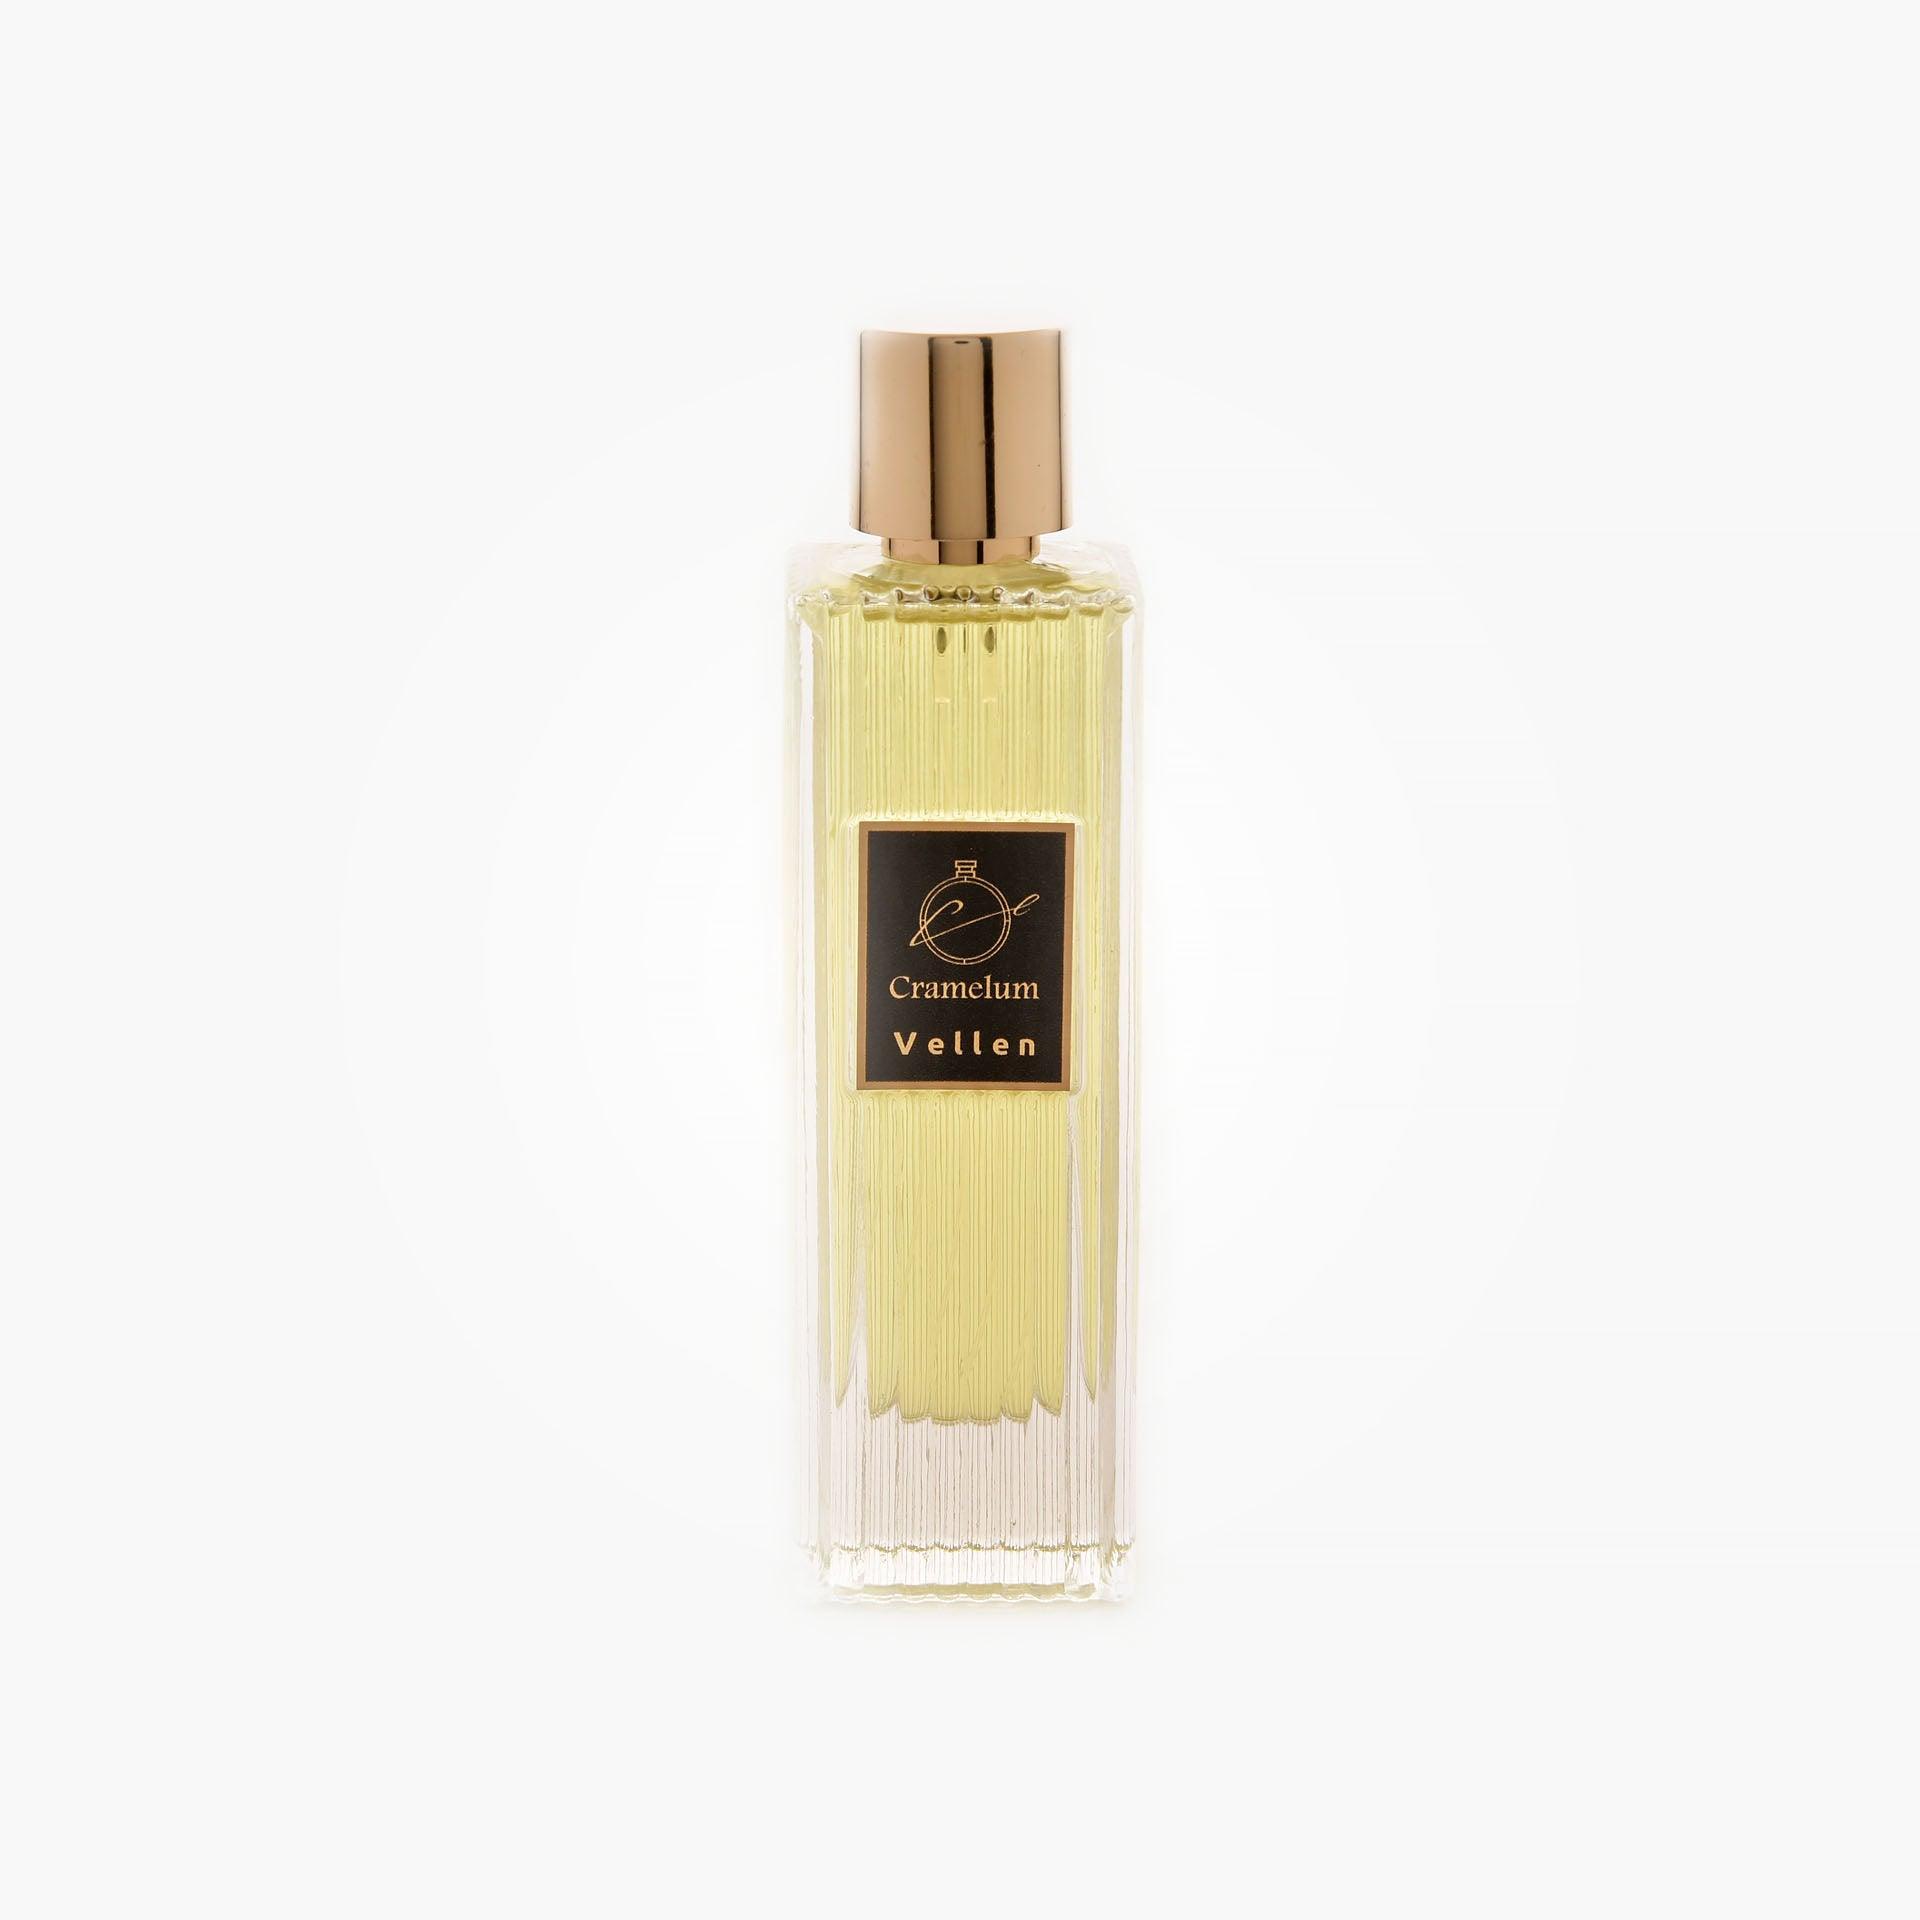 Vellen Perfume By Cramelum - WECRE8